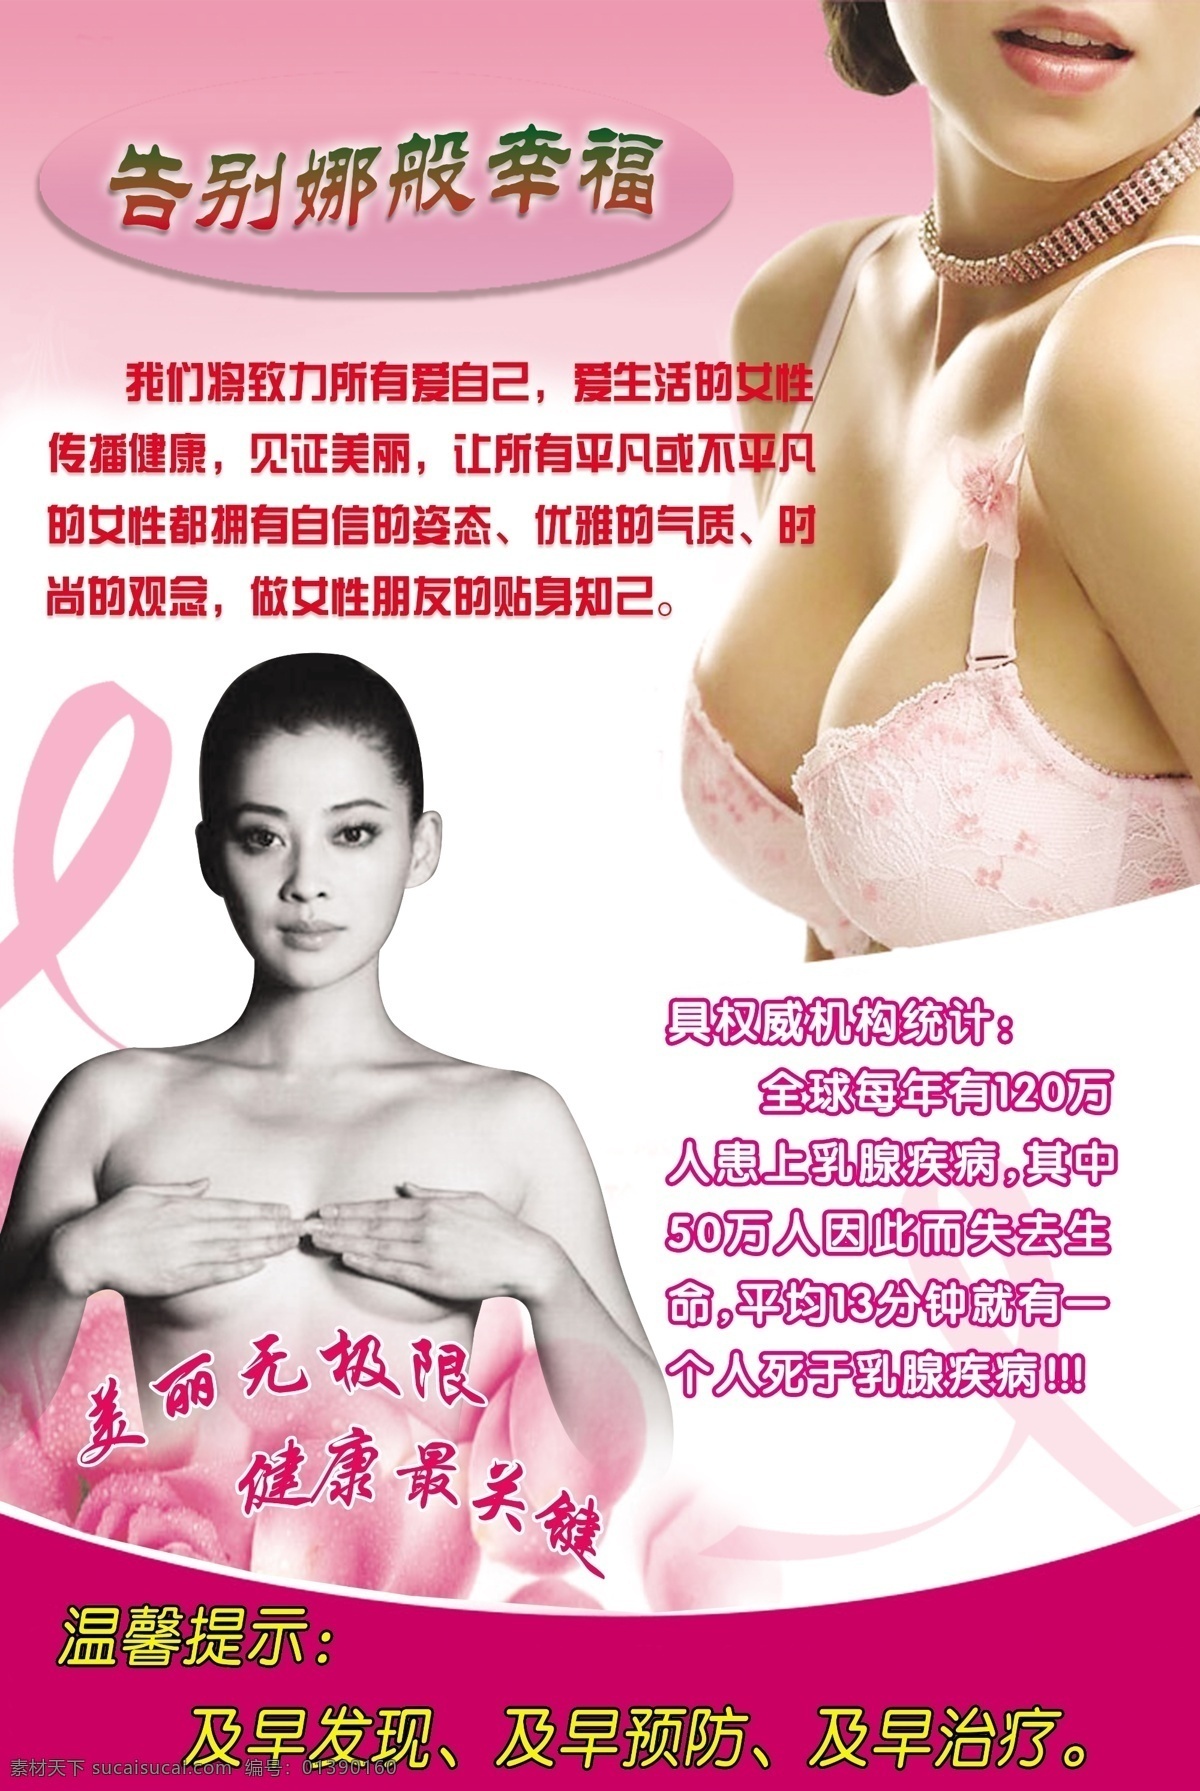 拯救 乳房 关爱生命 乳房发病率 关注乳房 单乳房 原创设计 原创海报